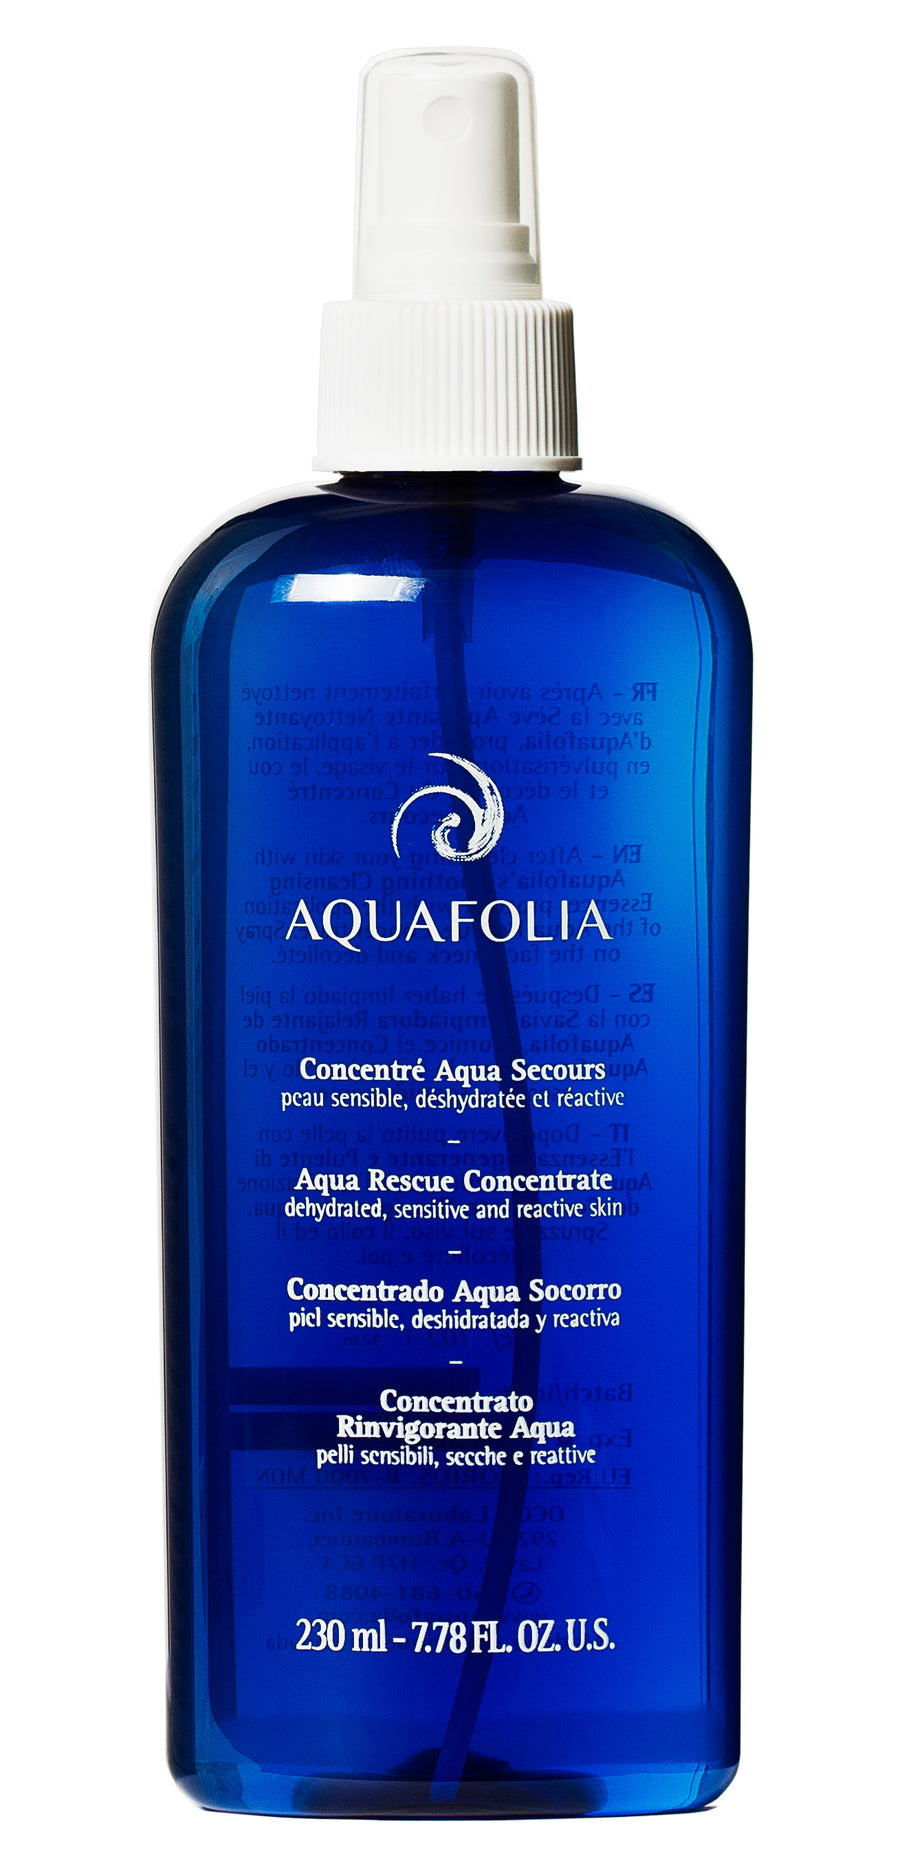 Aquafolia- Aqua Secours Concentrate- Aqua Secours Concept